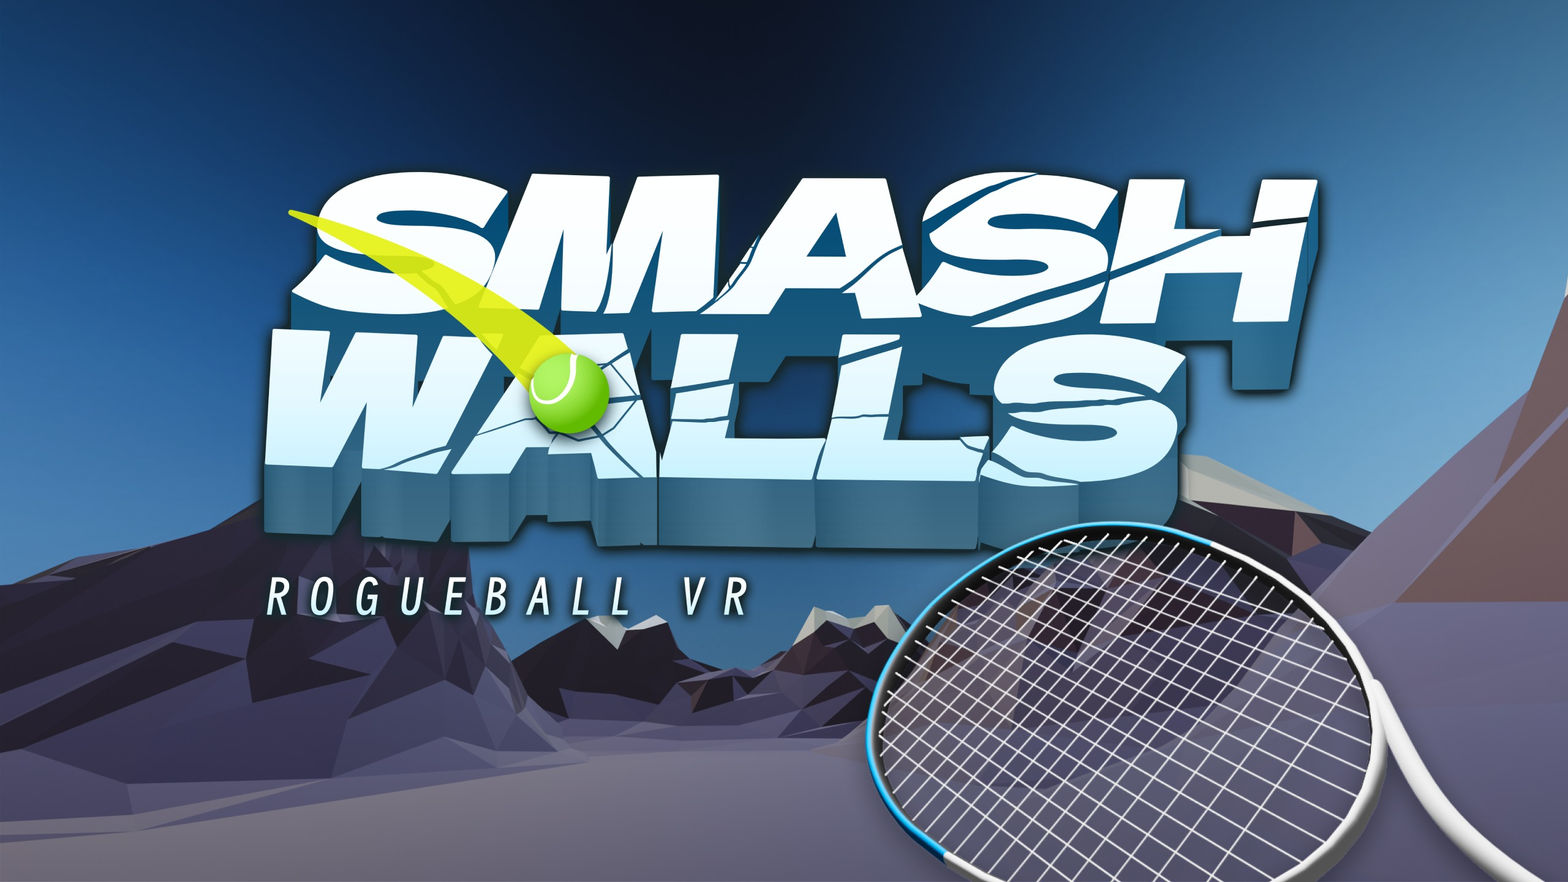 Smash Walls: RogueBall